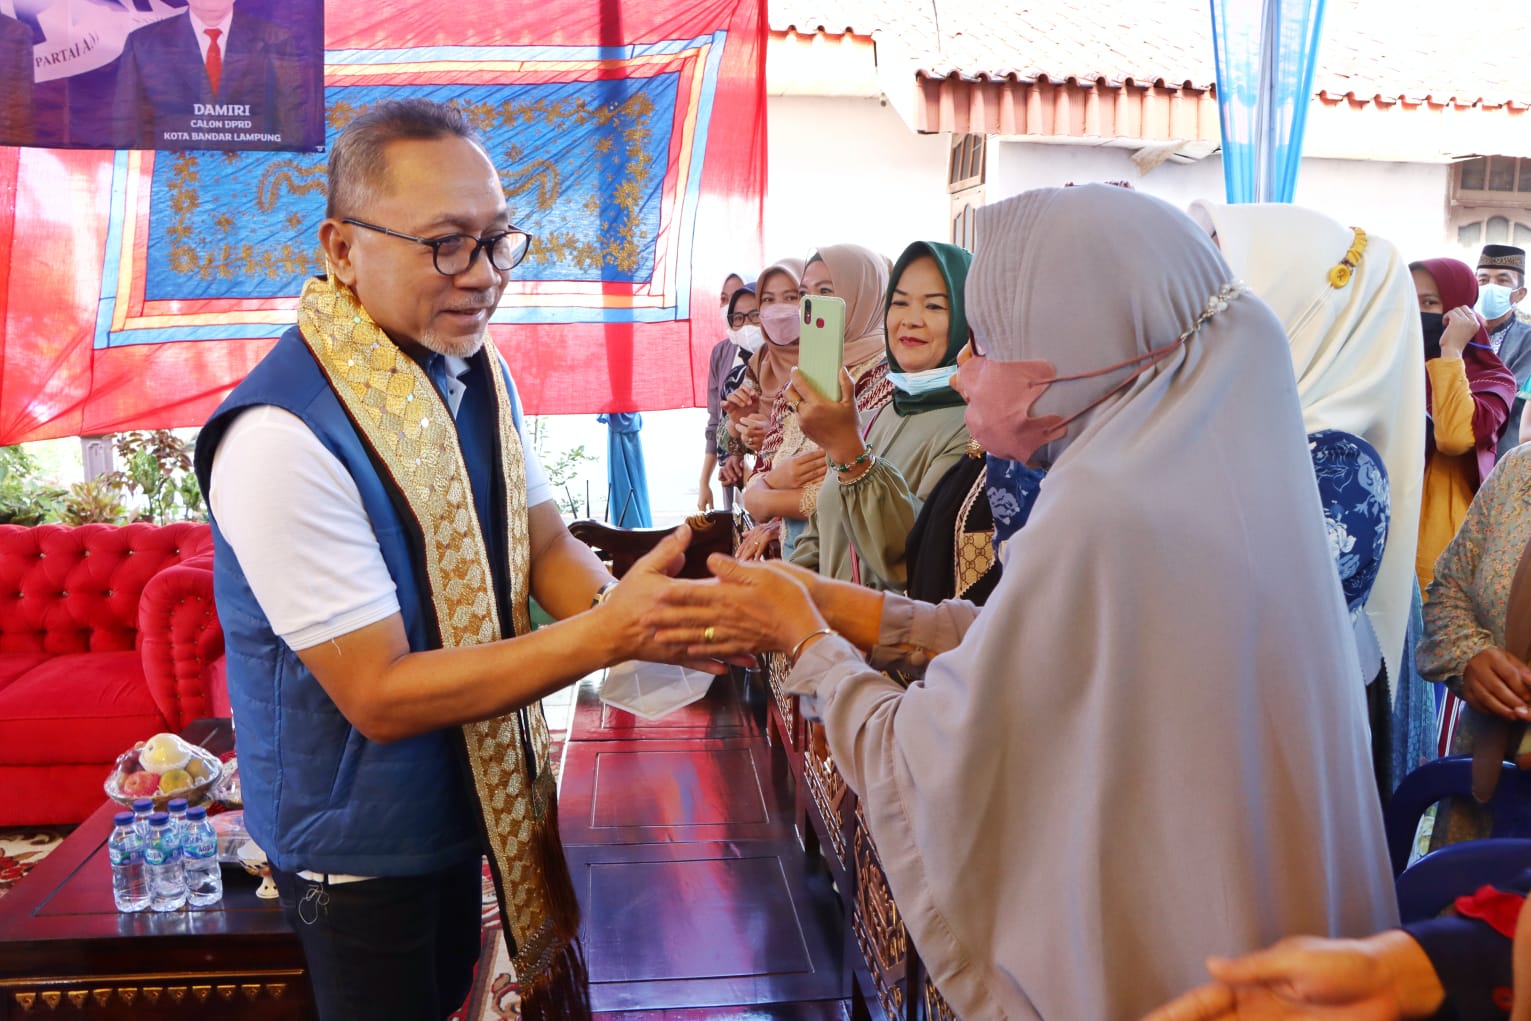 Menteri Perdagangan Tinjau Pasar Murah Di Wilayah Kota Bandar Lampung, Pastikan Ketersediaan Minyak dan Harga Terkendali